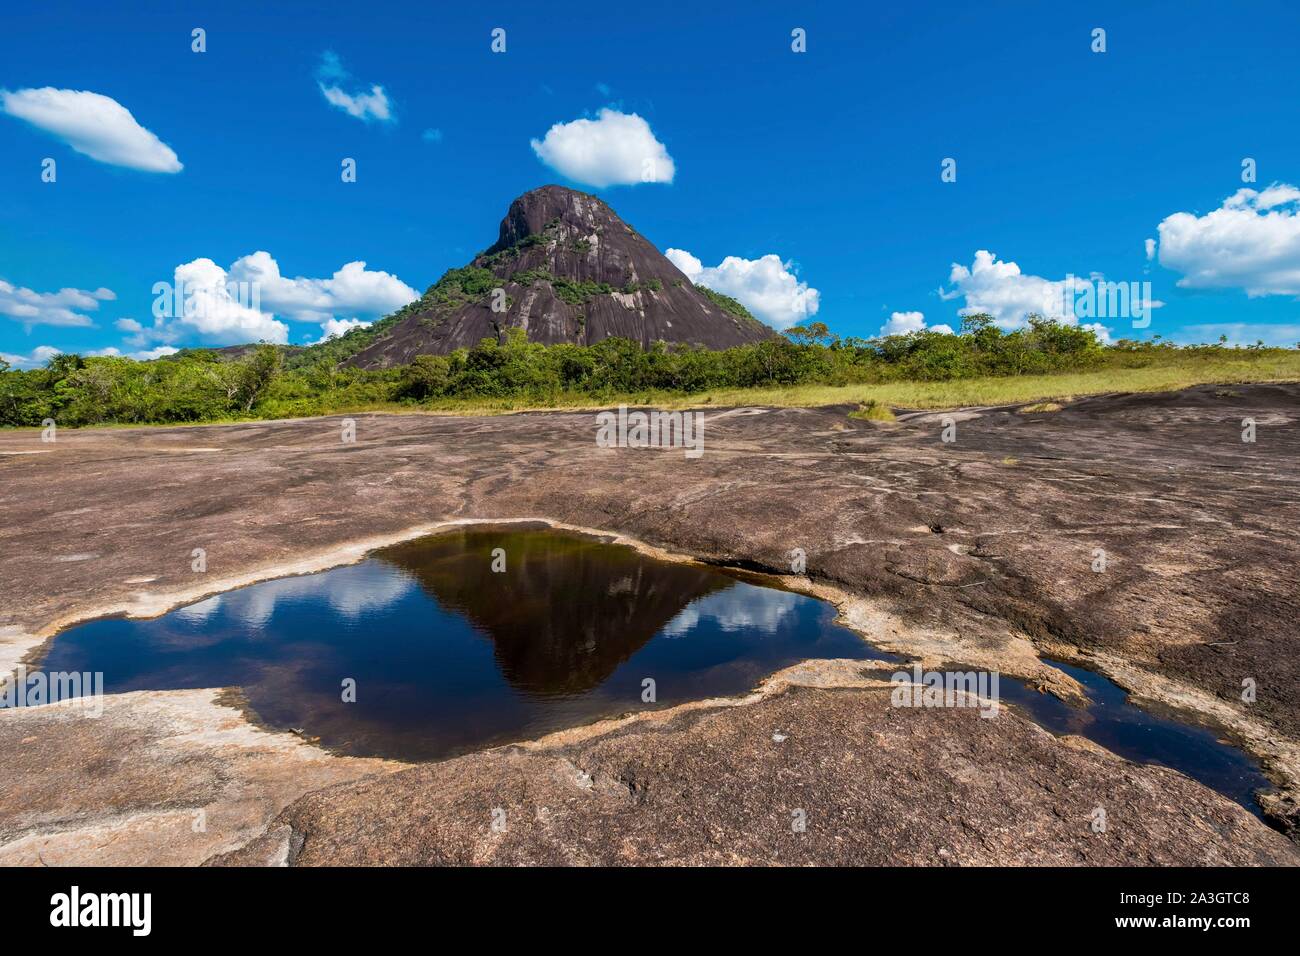 Colombia, Guainia, Inirida, Cerros de Mavicure, Cerro Mavicure Stock Photo